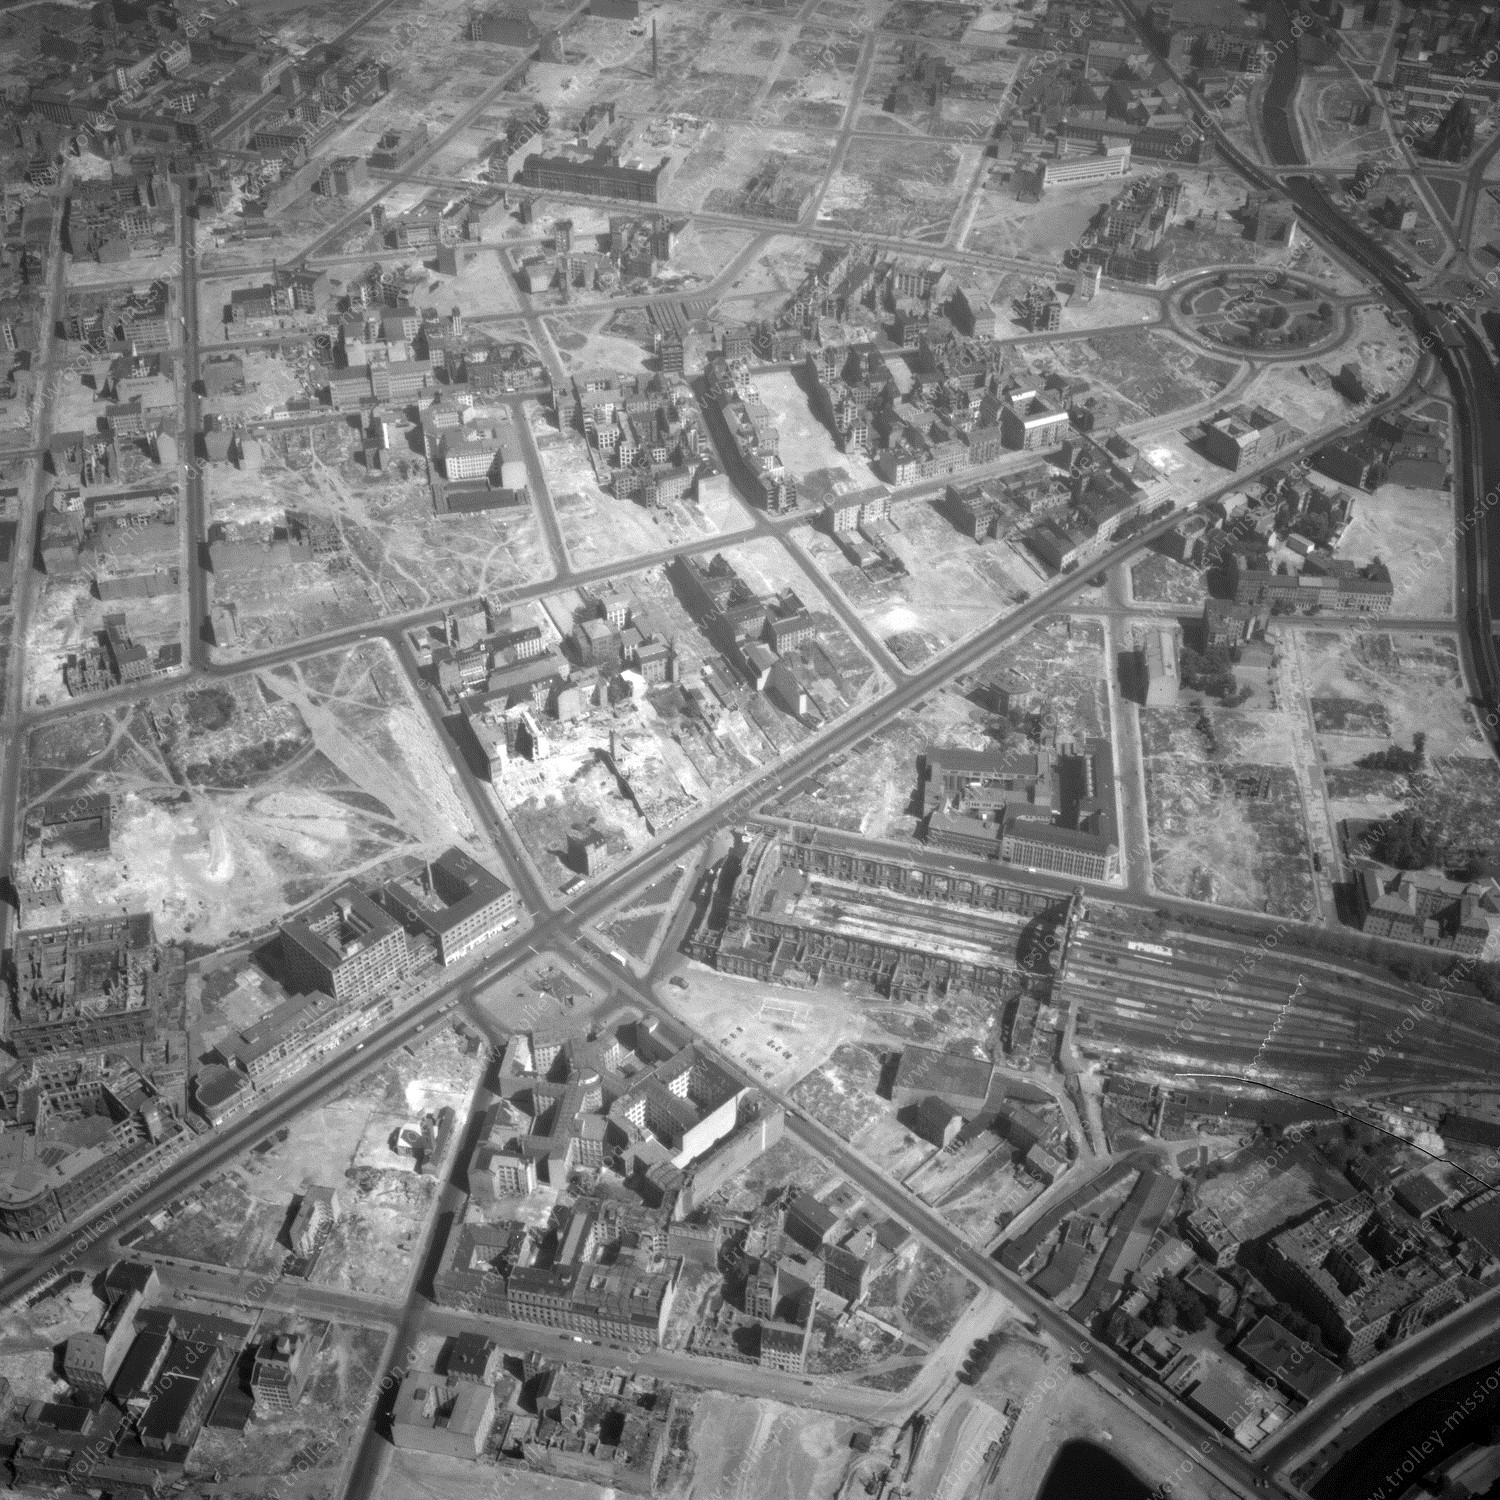 Alte Fotos und Luftbilder von Berlin - Luftbildaufnahme Nr. 08 - Historische Luftaufnahmen von West-Berlin aus dem Jahr 1954 - Flugstrecke India